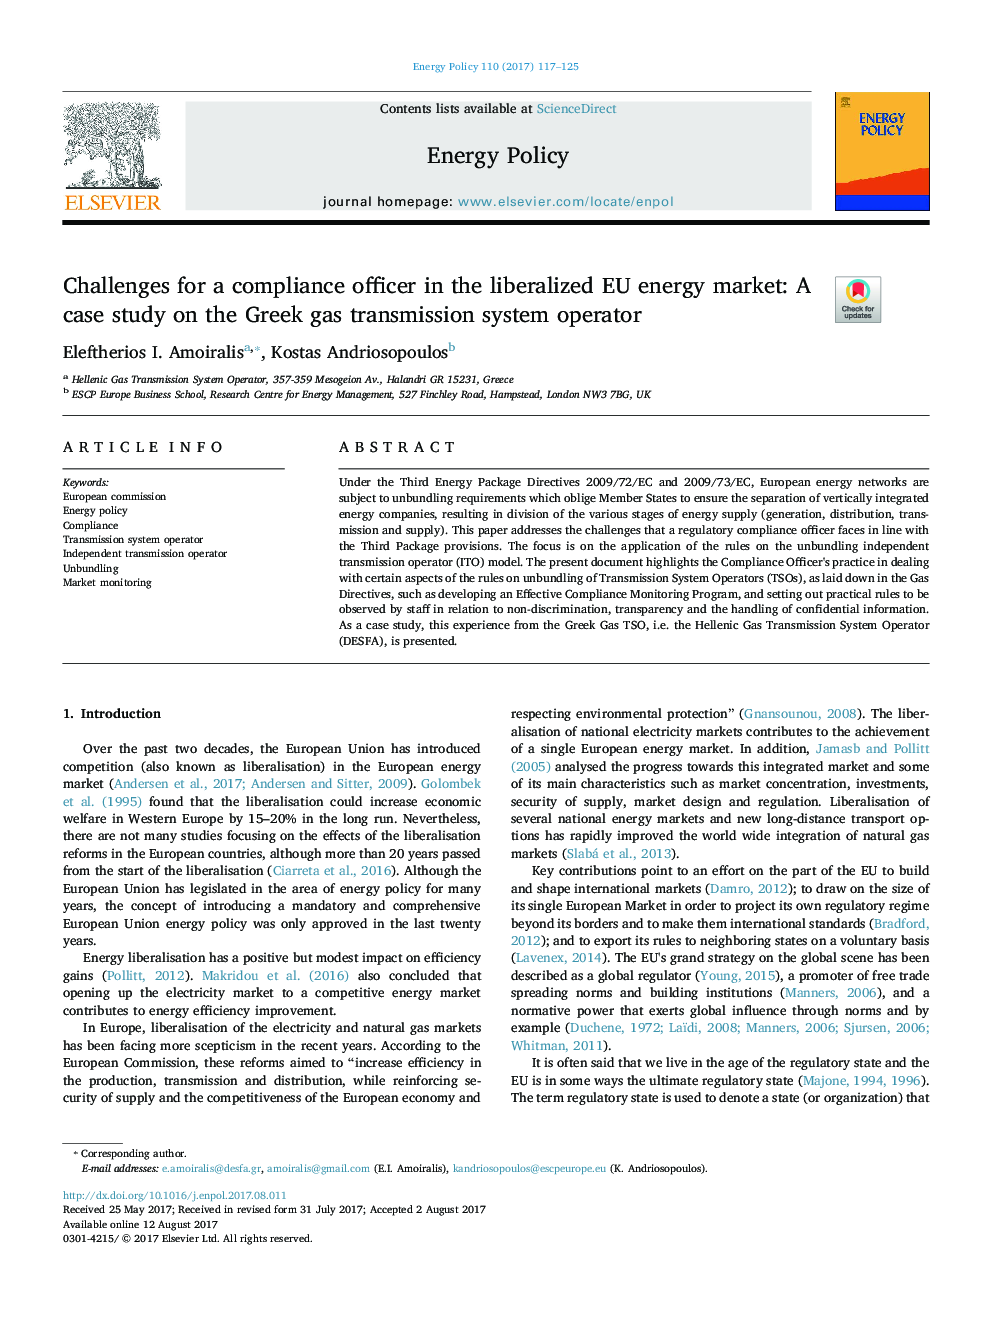 چالش هایی برای یک افسر انطباق در بازار انرژی لیبرال اتحادیه اروپا: یک مطالعه موردی در مورد اپراتور سیستم انتقال گاز یونان 